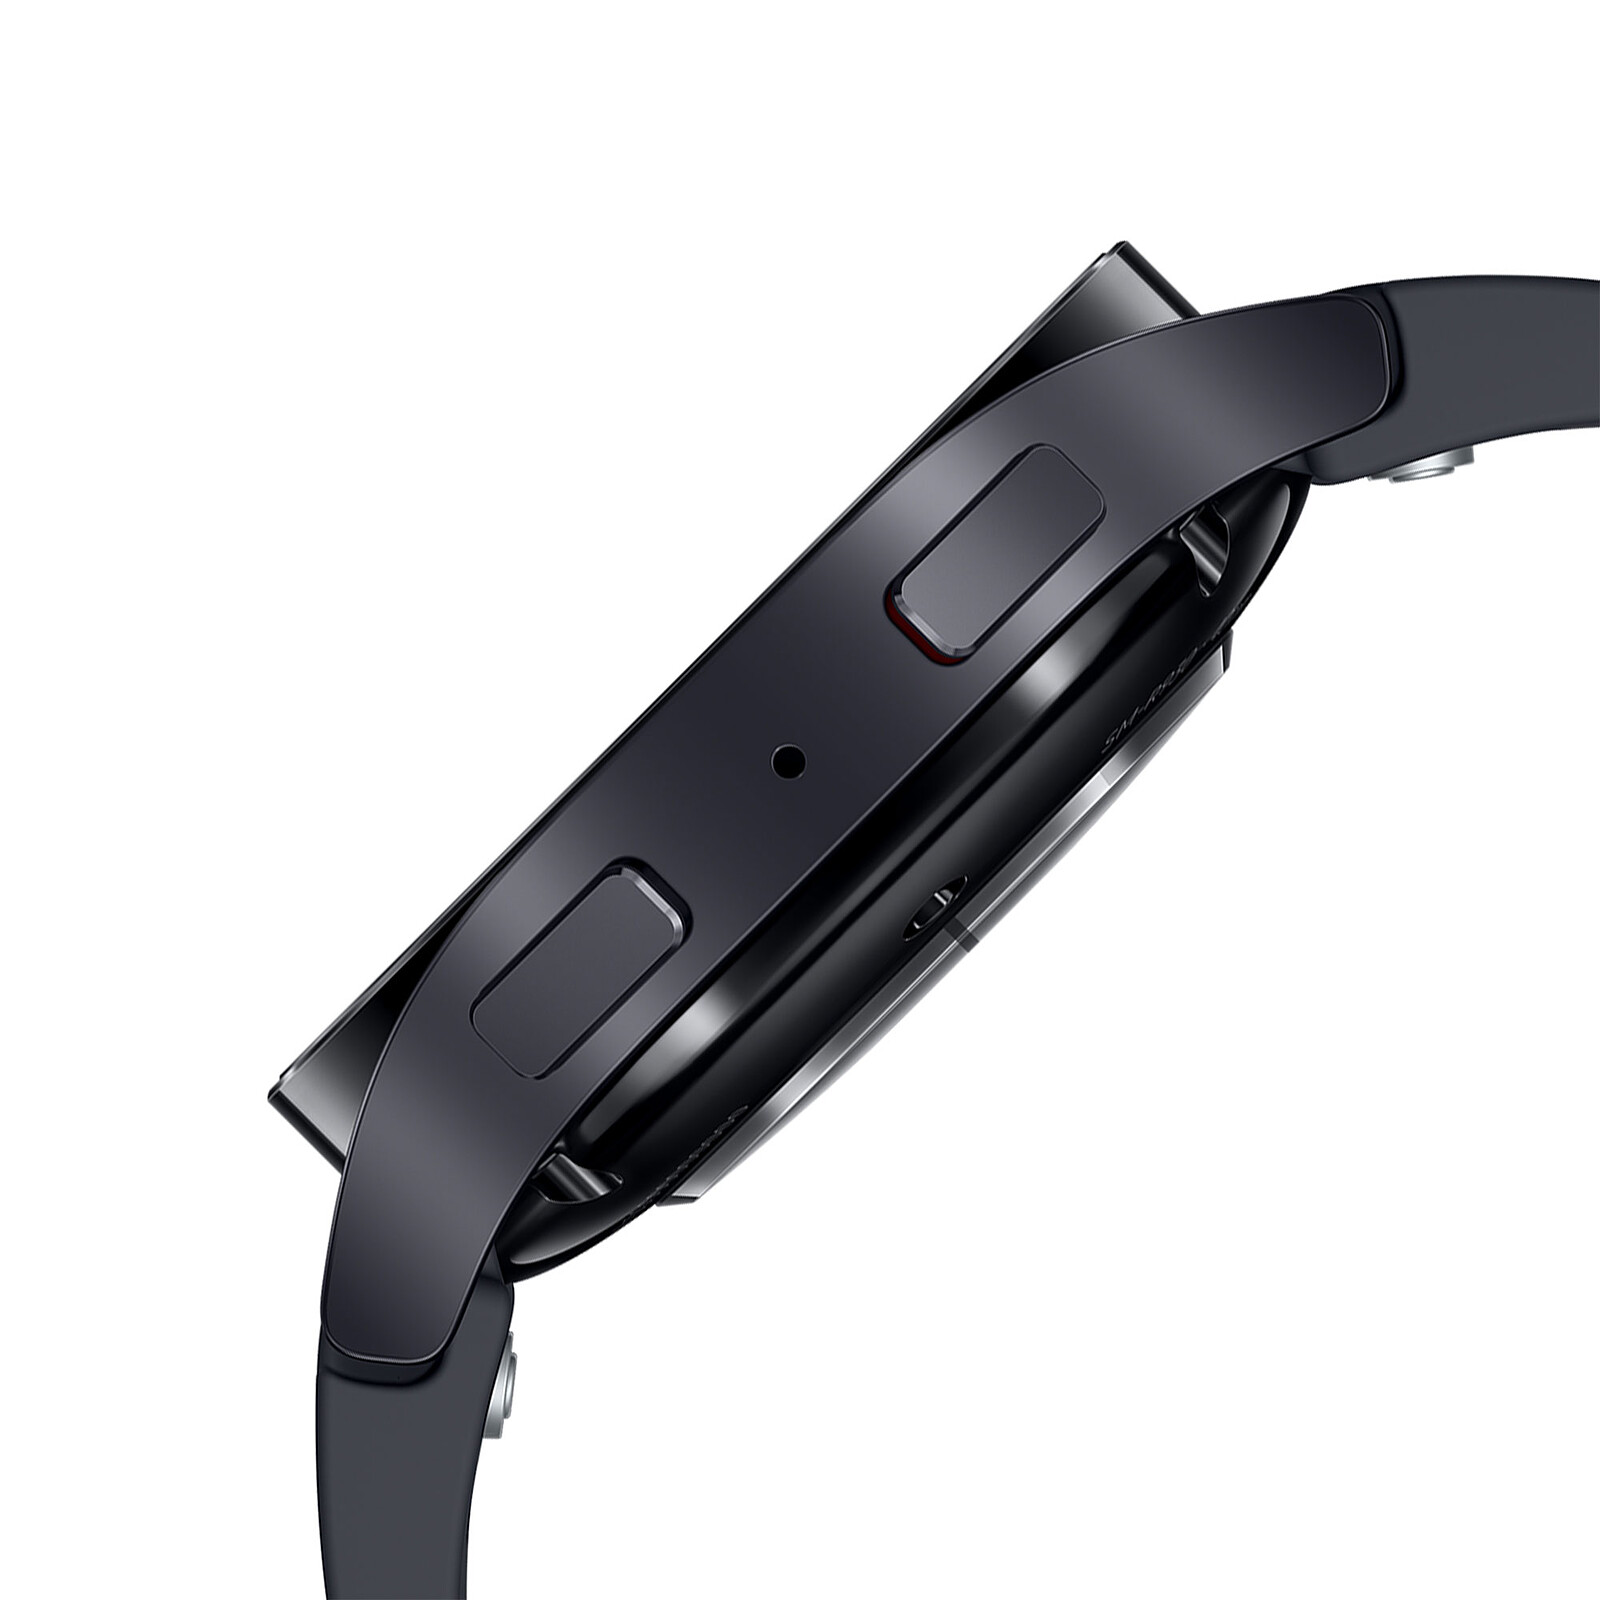 TEST : Samsung Gear S3, la meilleure montre connectée pour Android